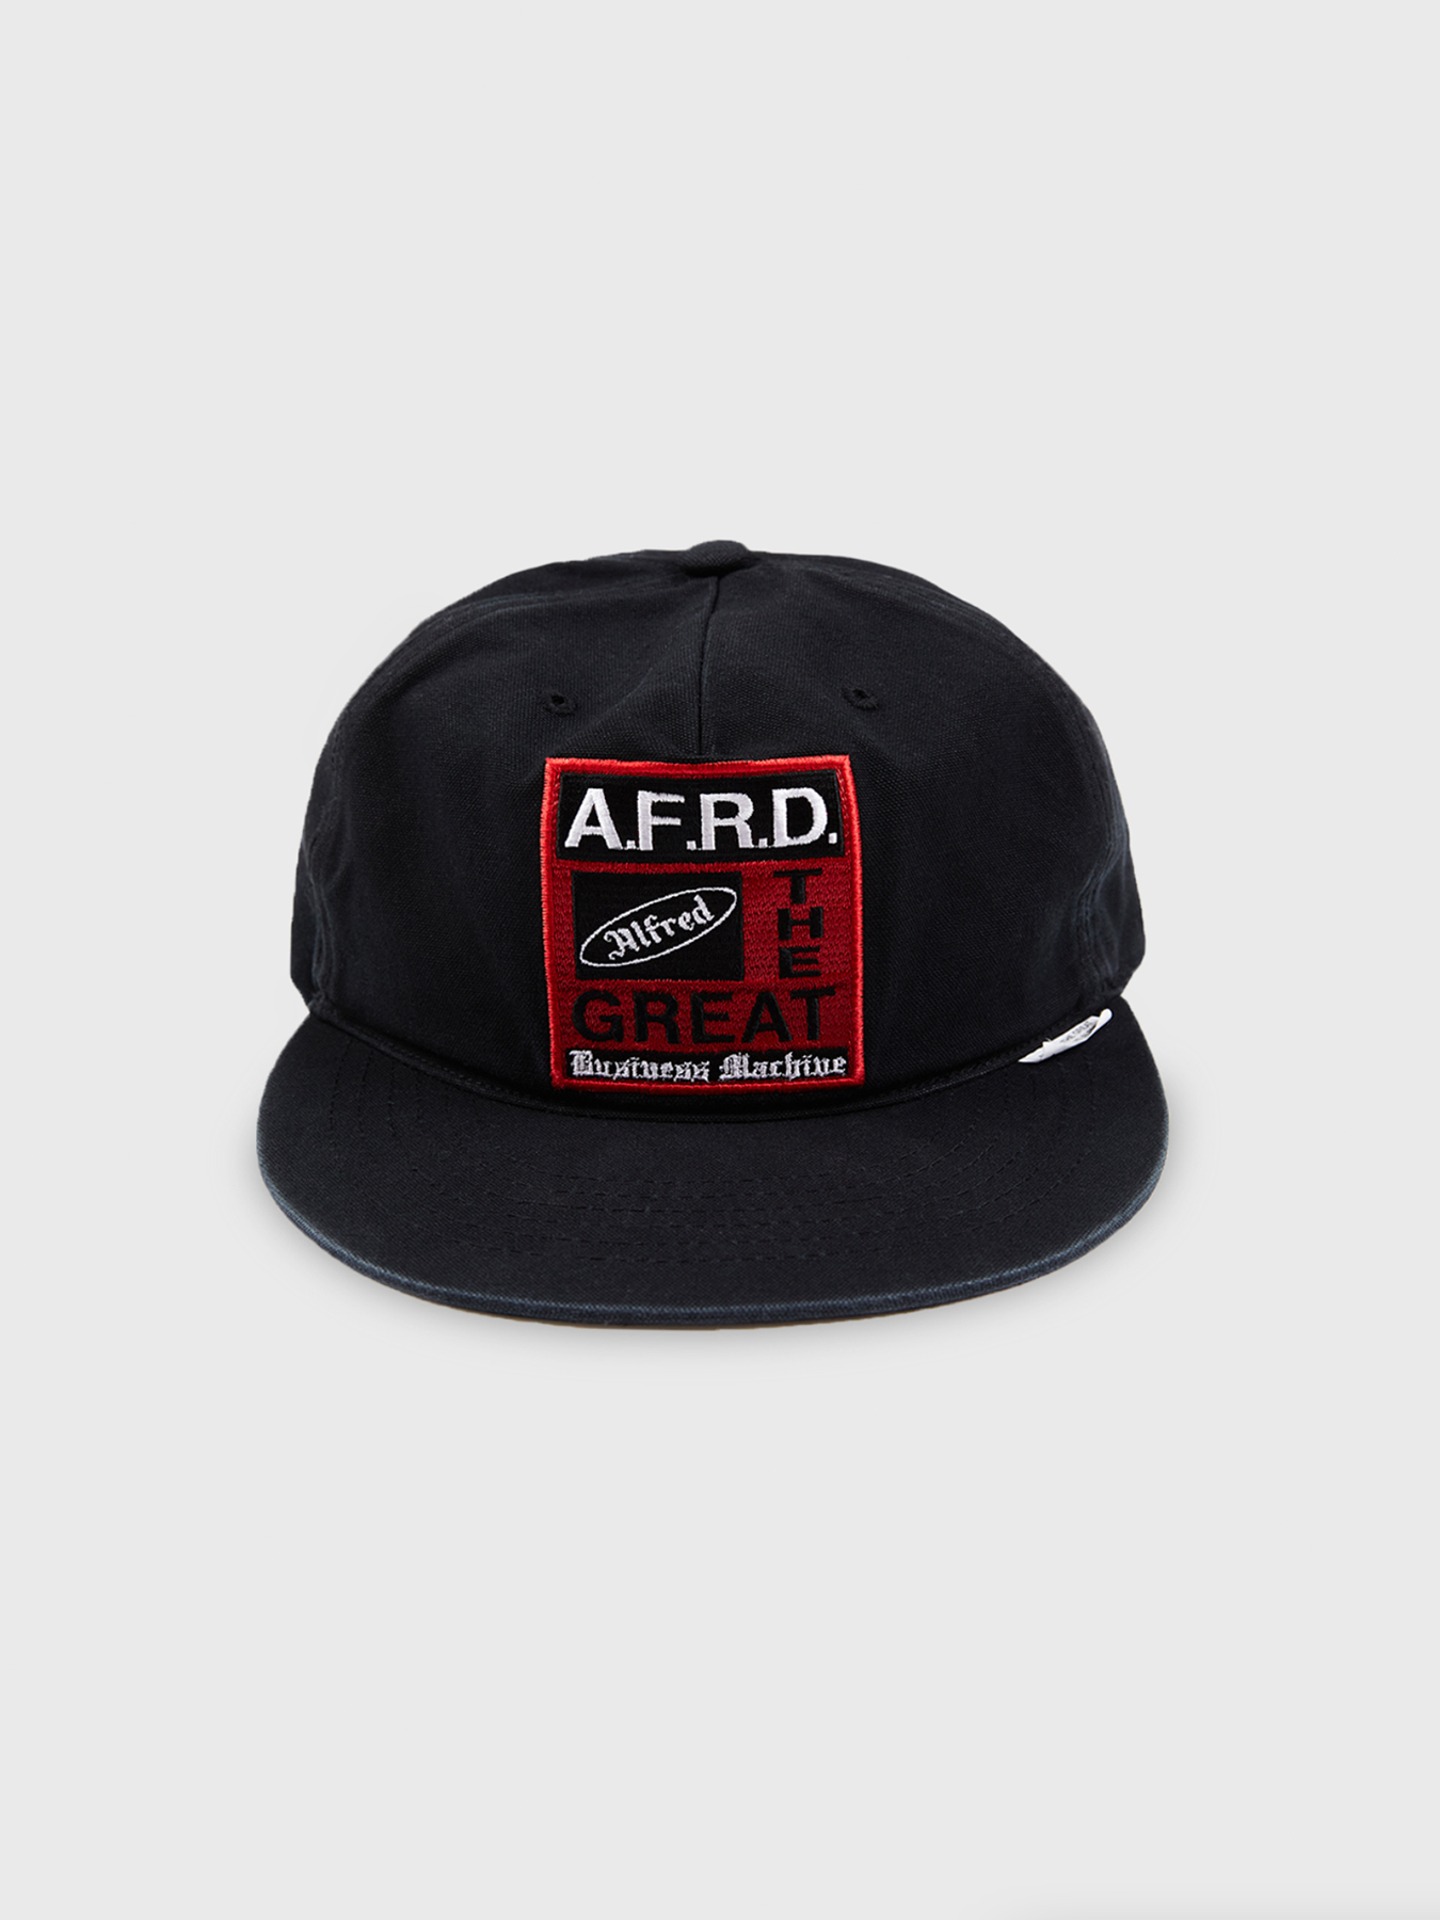 [Alfred] AFRD BUSINESS MACHINE CAP (BLACK)